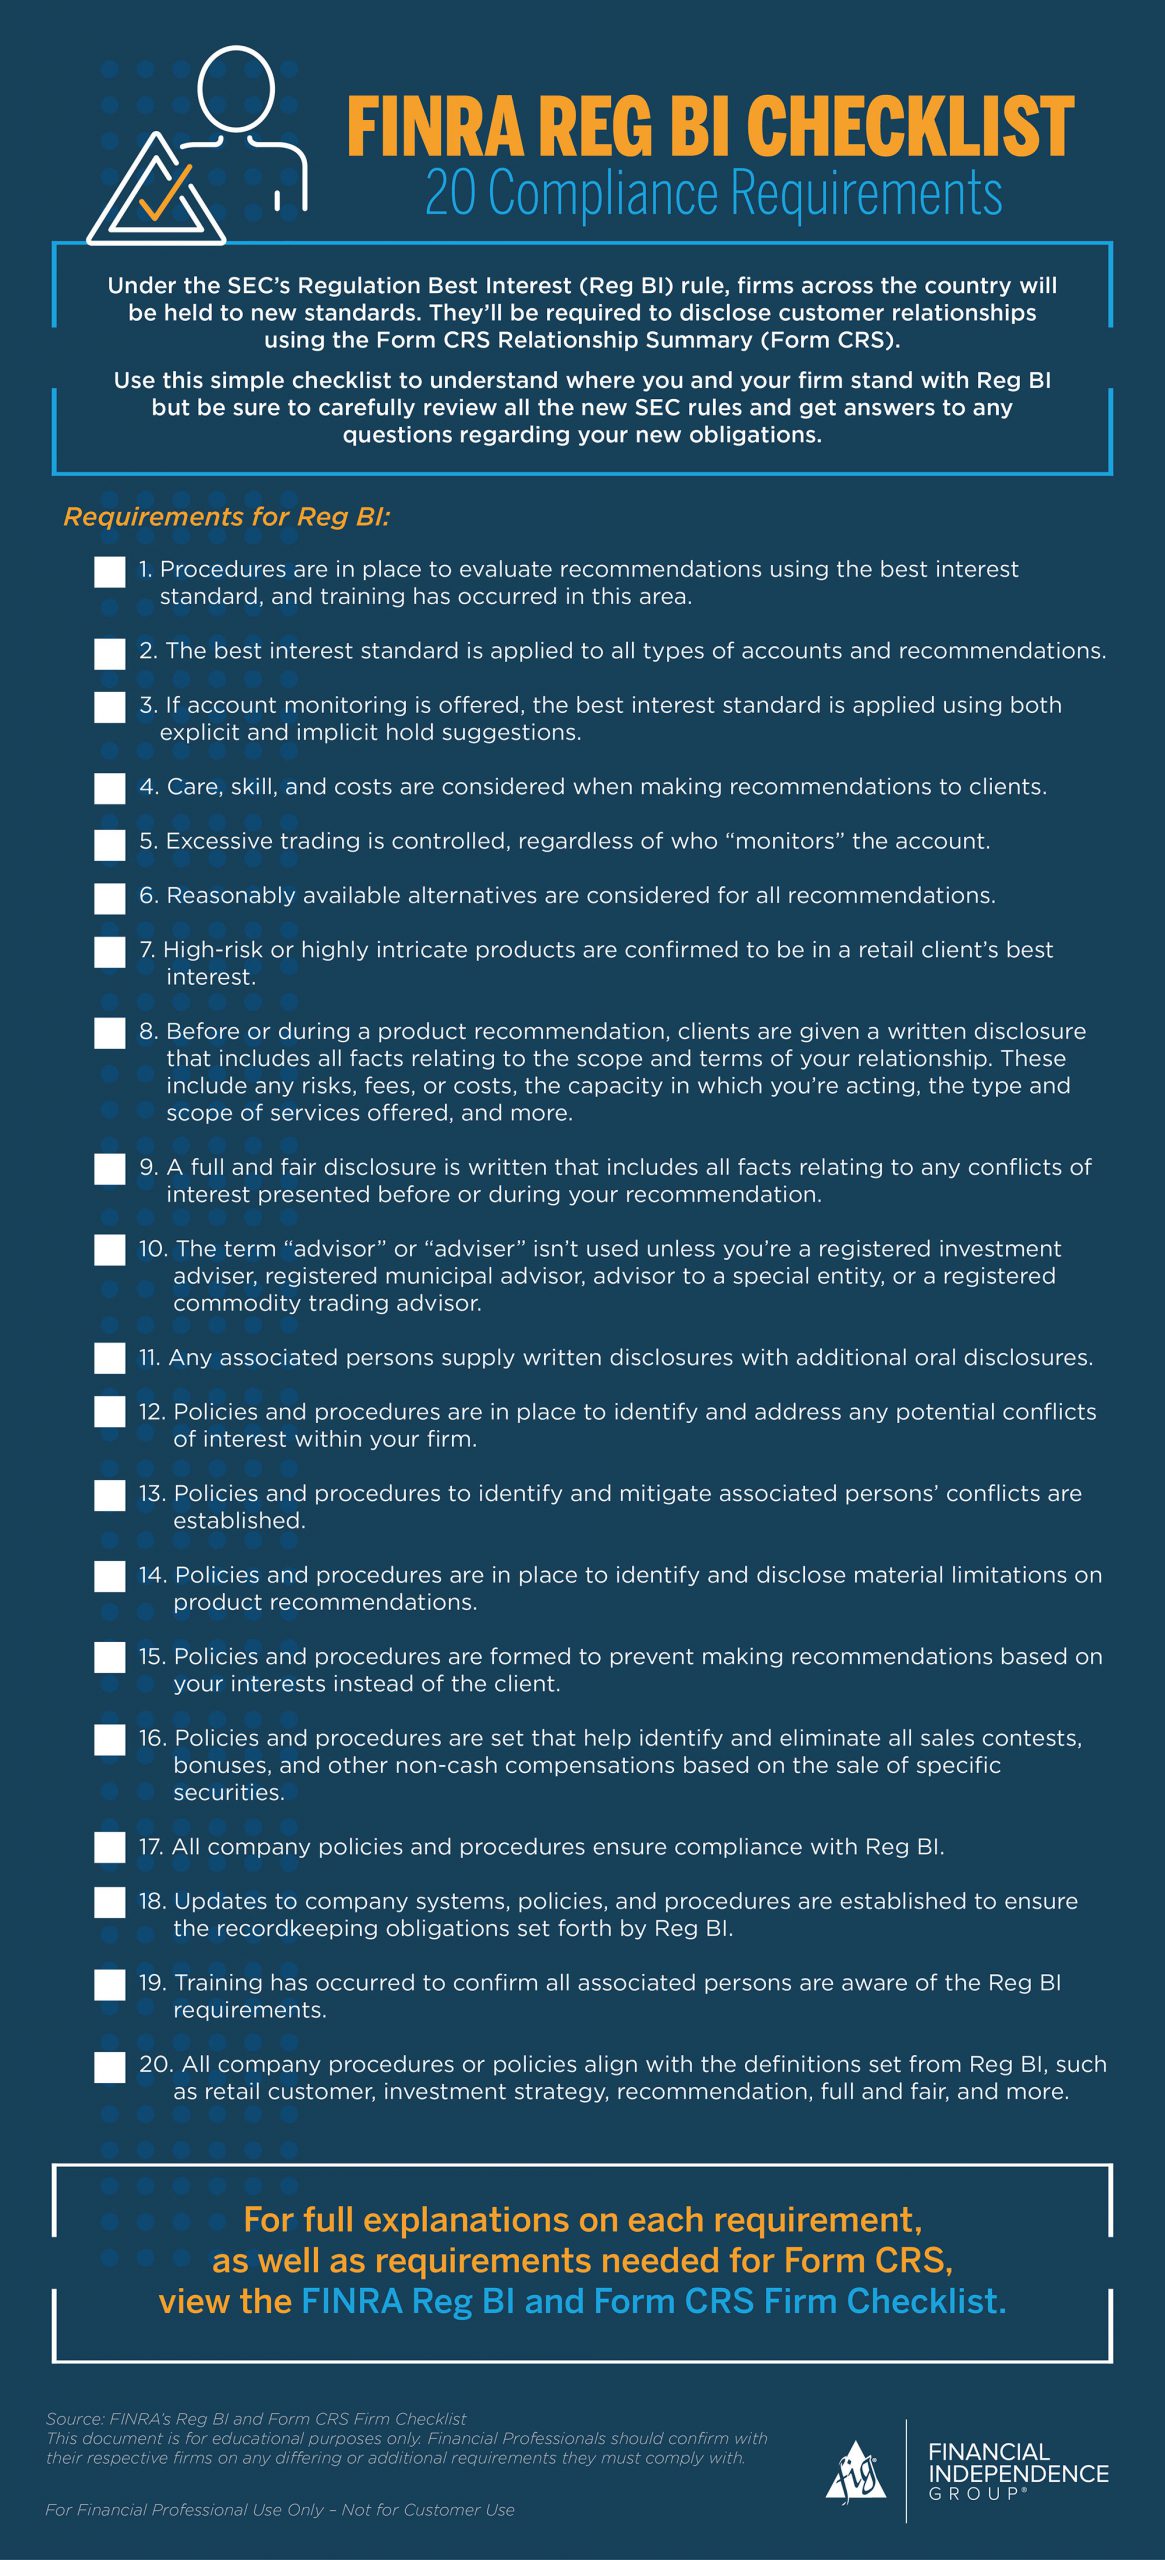 FINRA Reg BI Checklist infographic